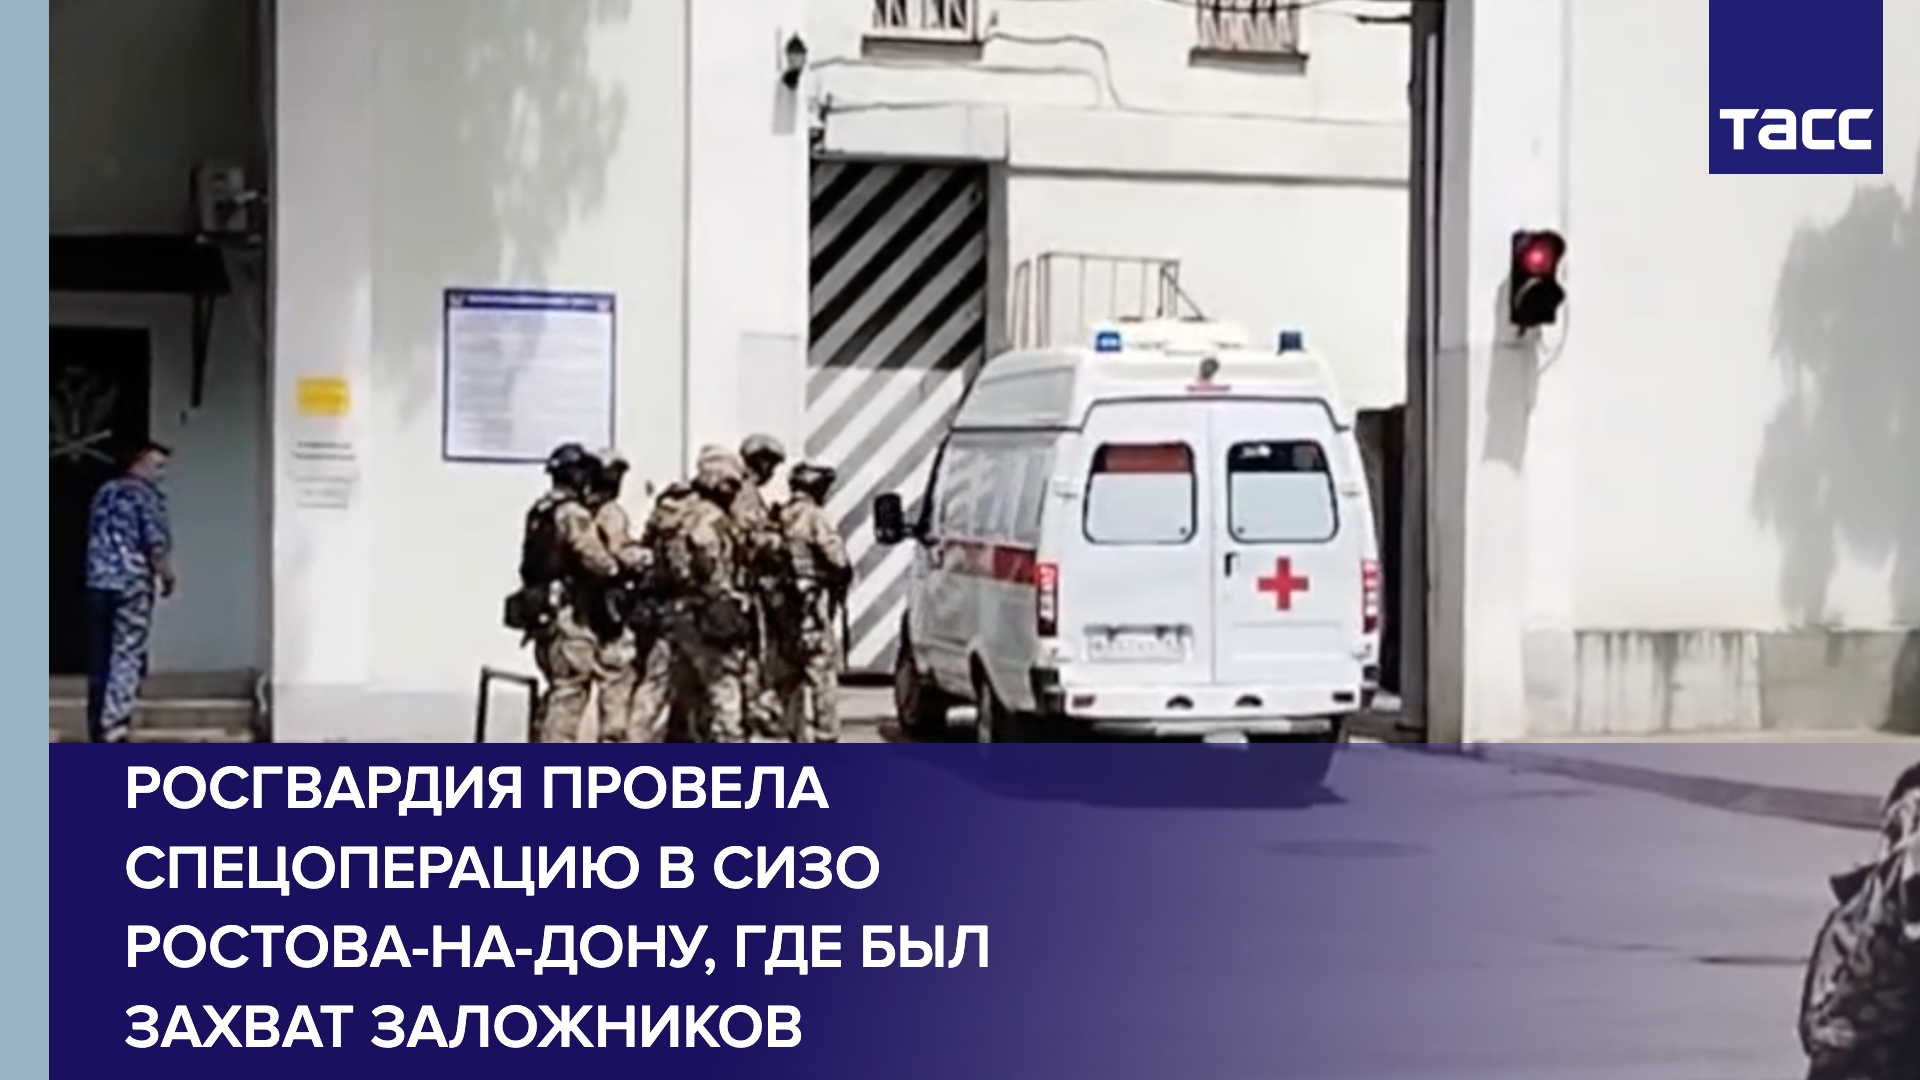 Спецоперация в СИЗО Ростовеа-на-Дону, где был захват заложников